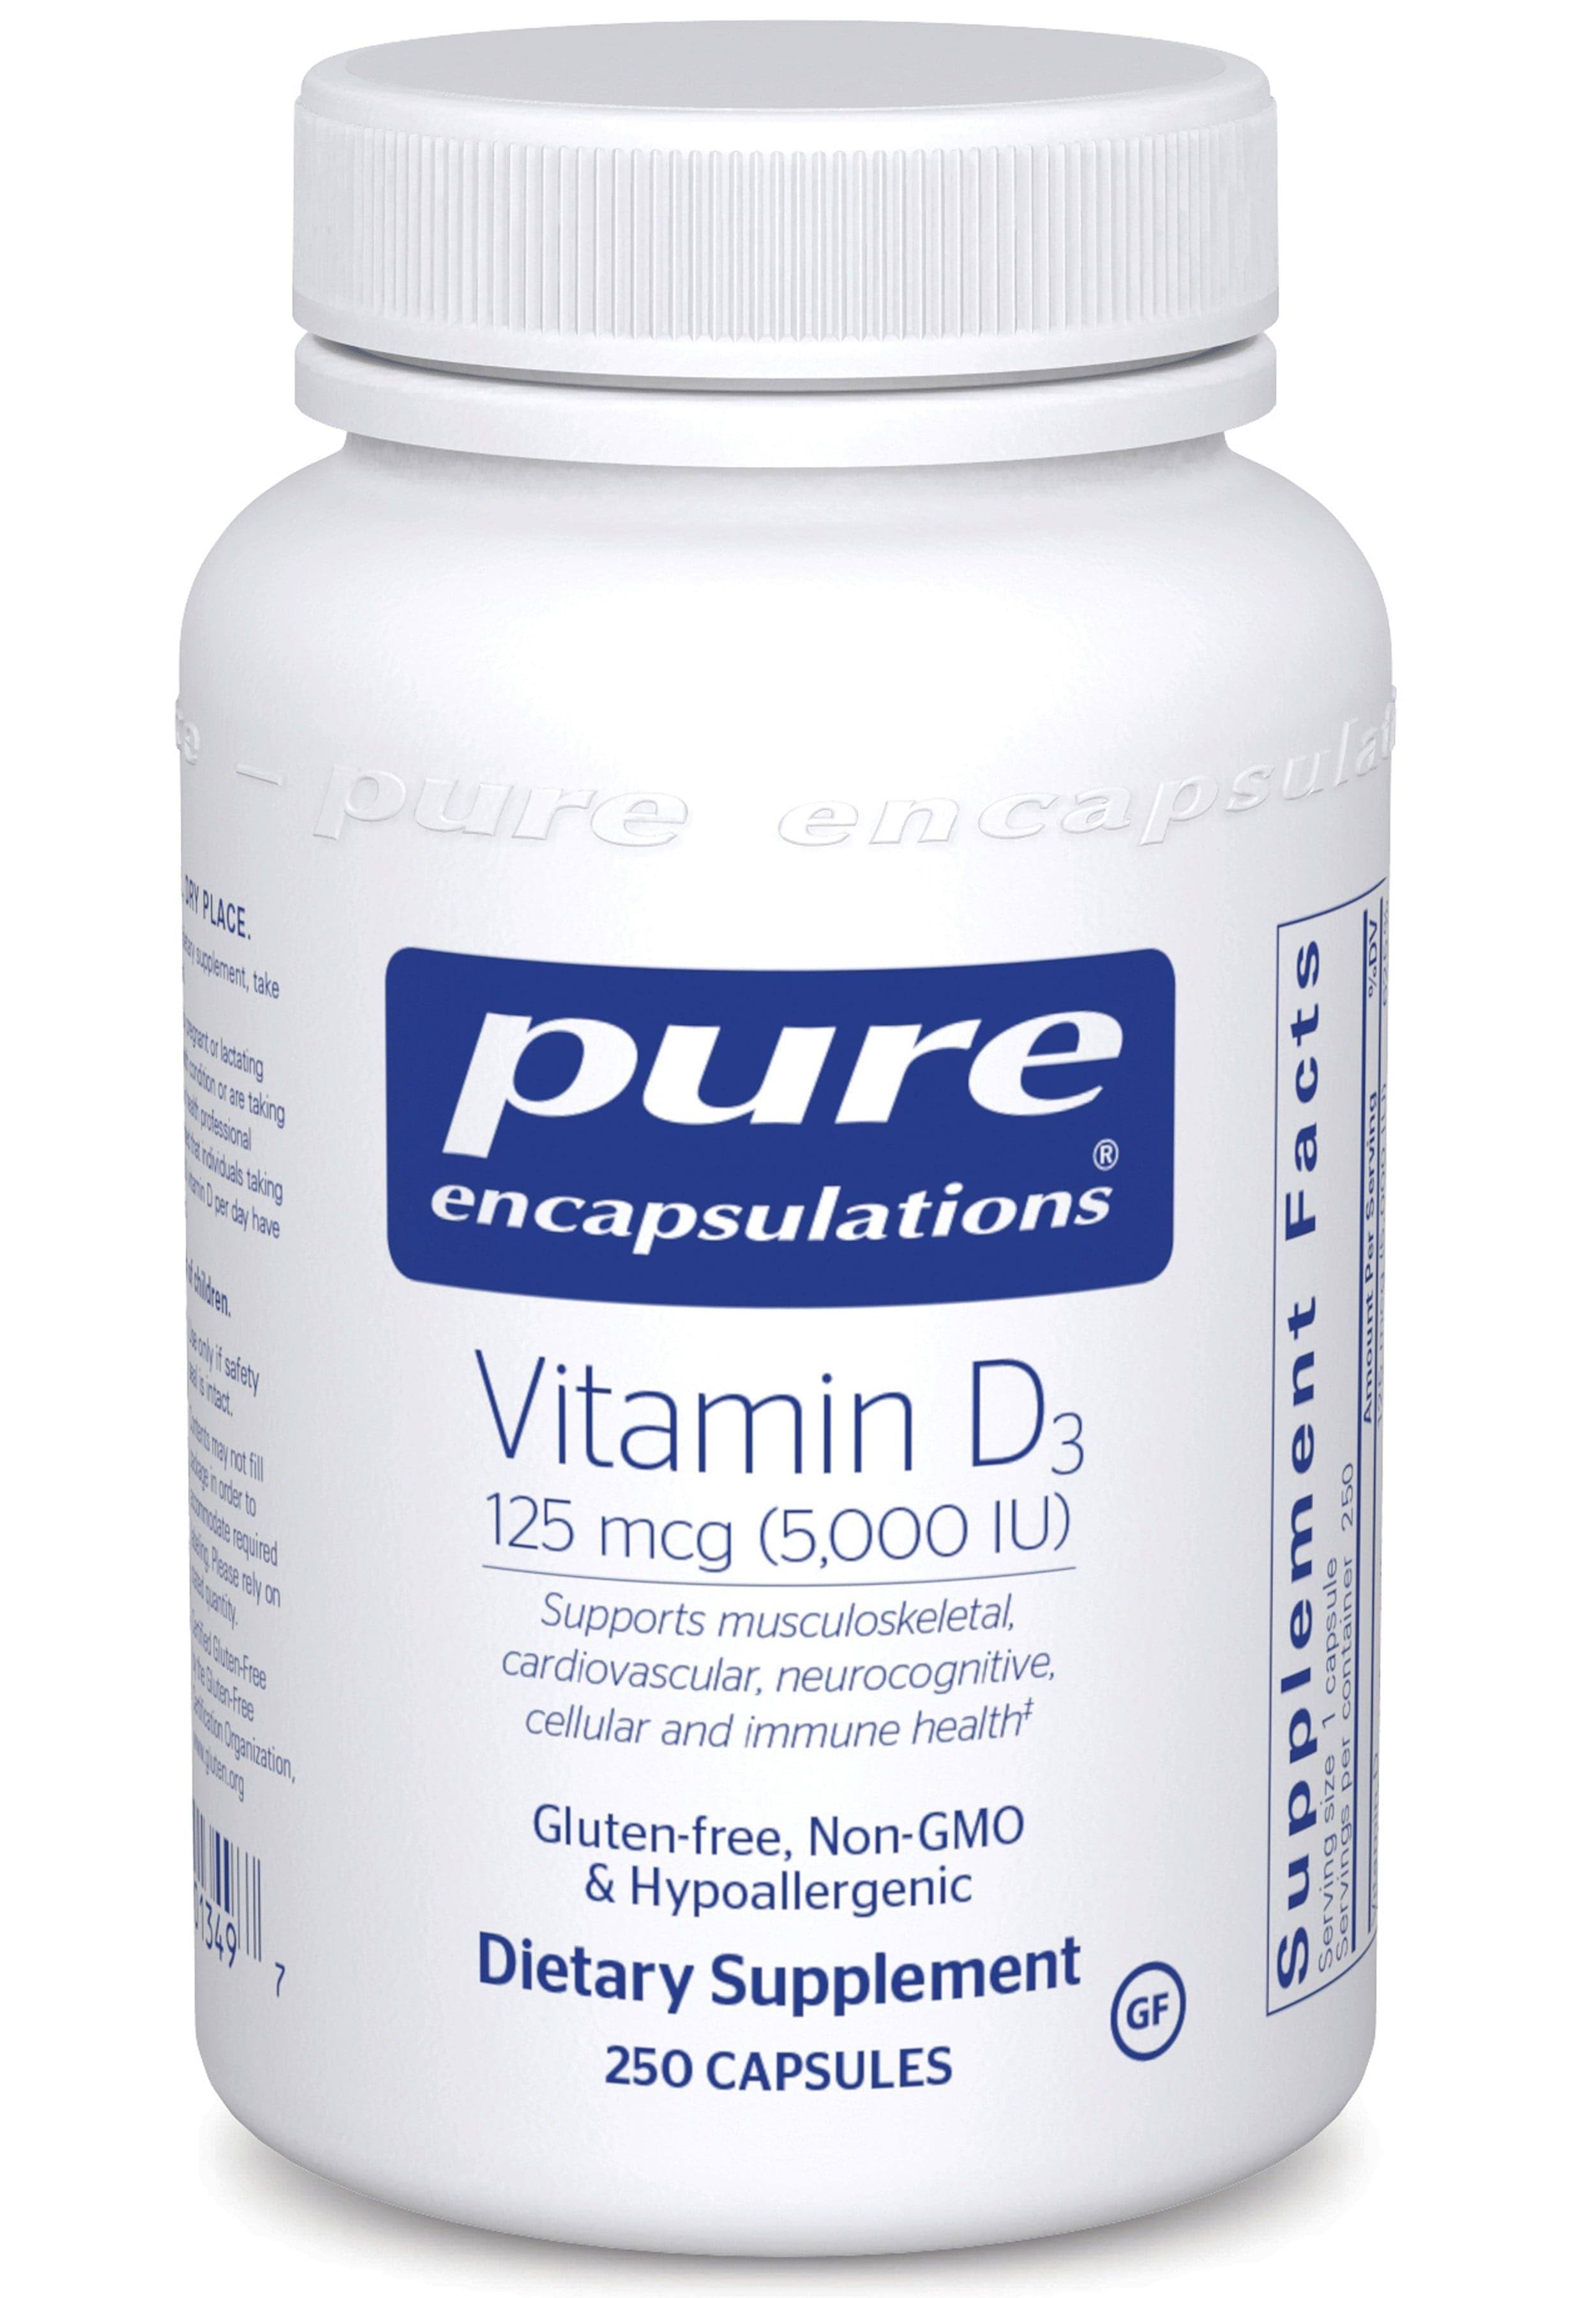 Pure Encapsulations Vitamin D3 Dietary Supplement - 60 Capsules, 5,000 IU